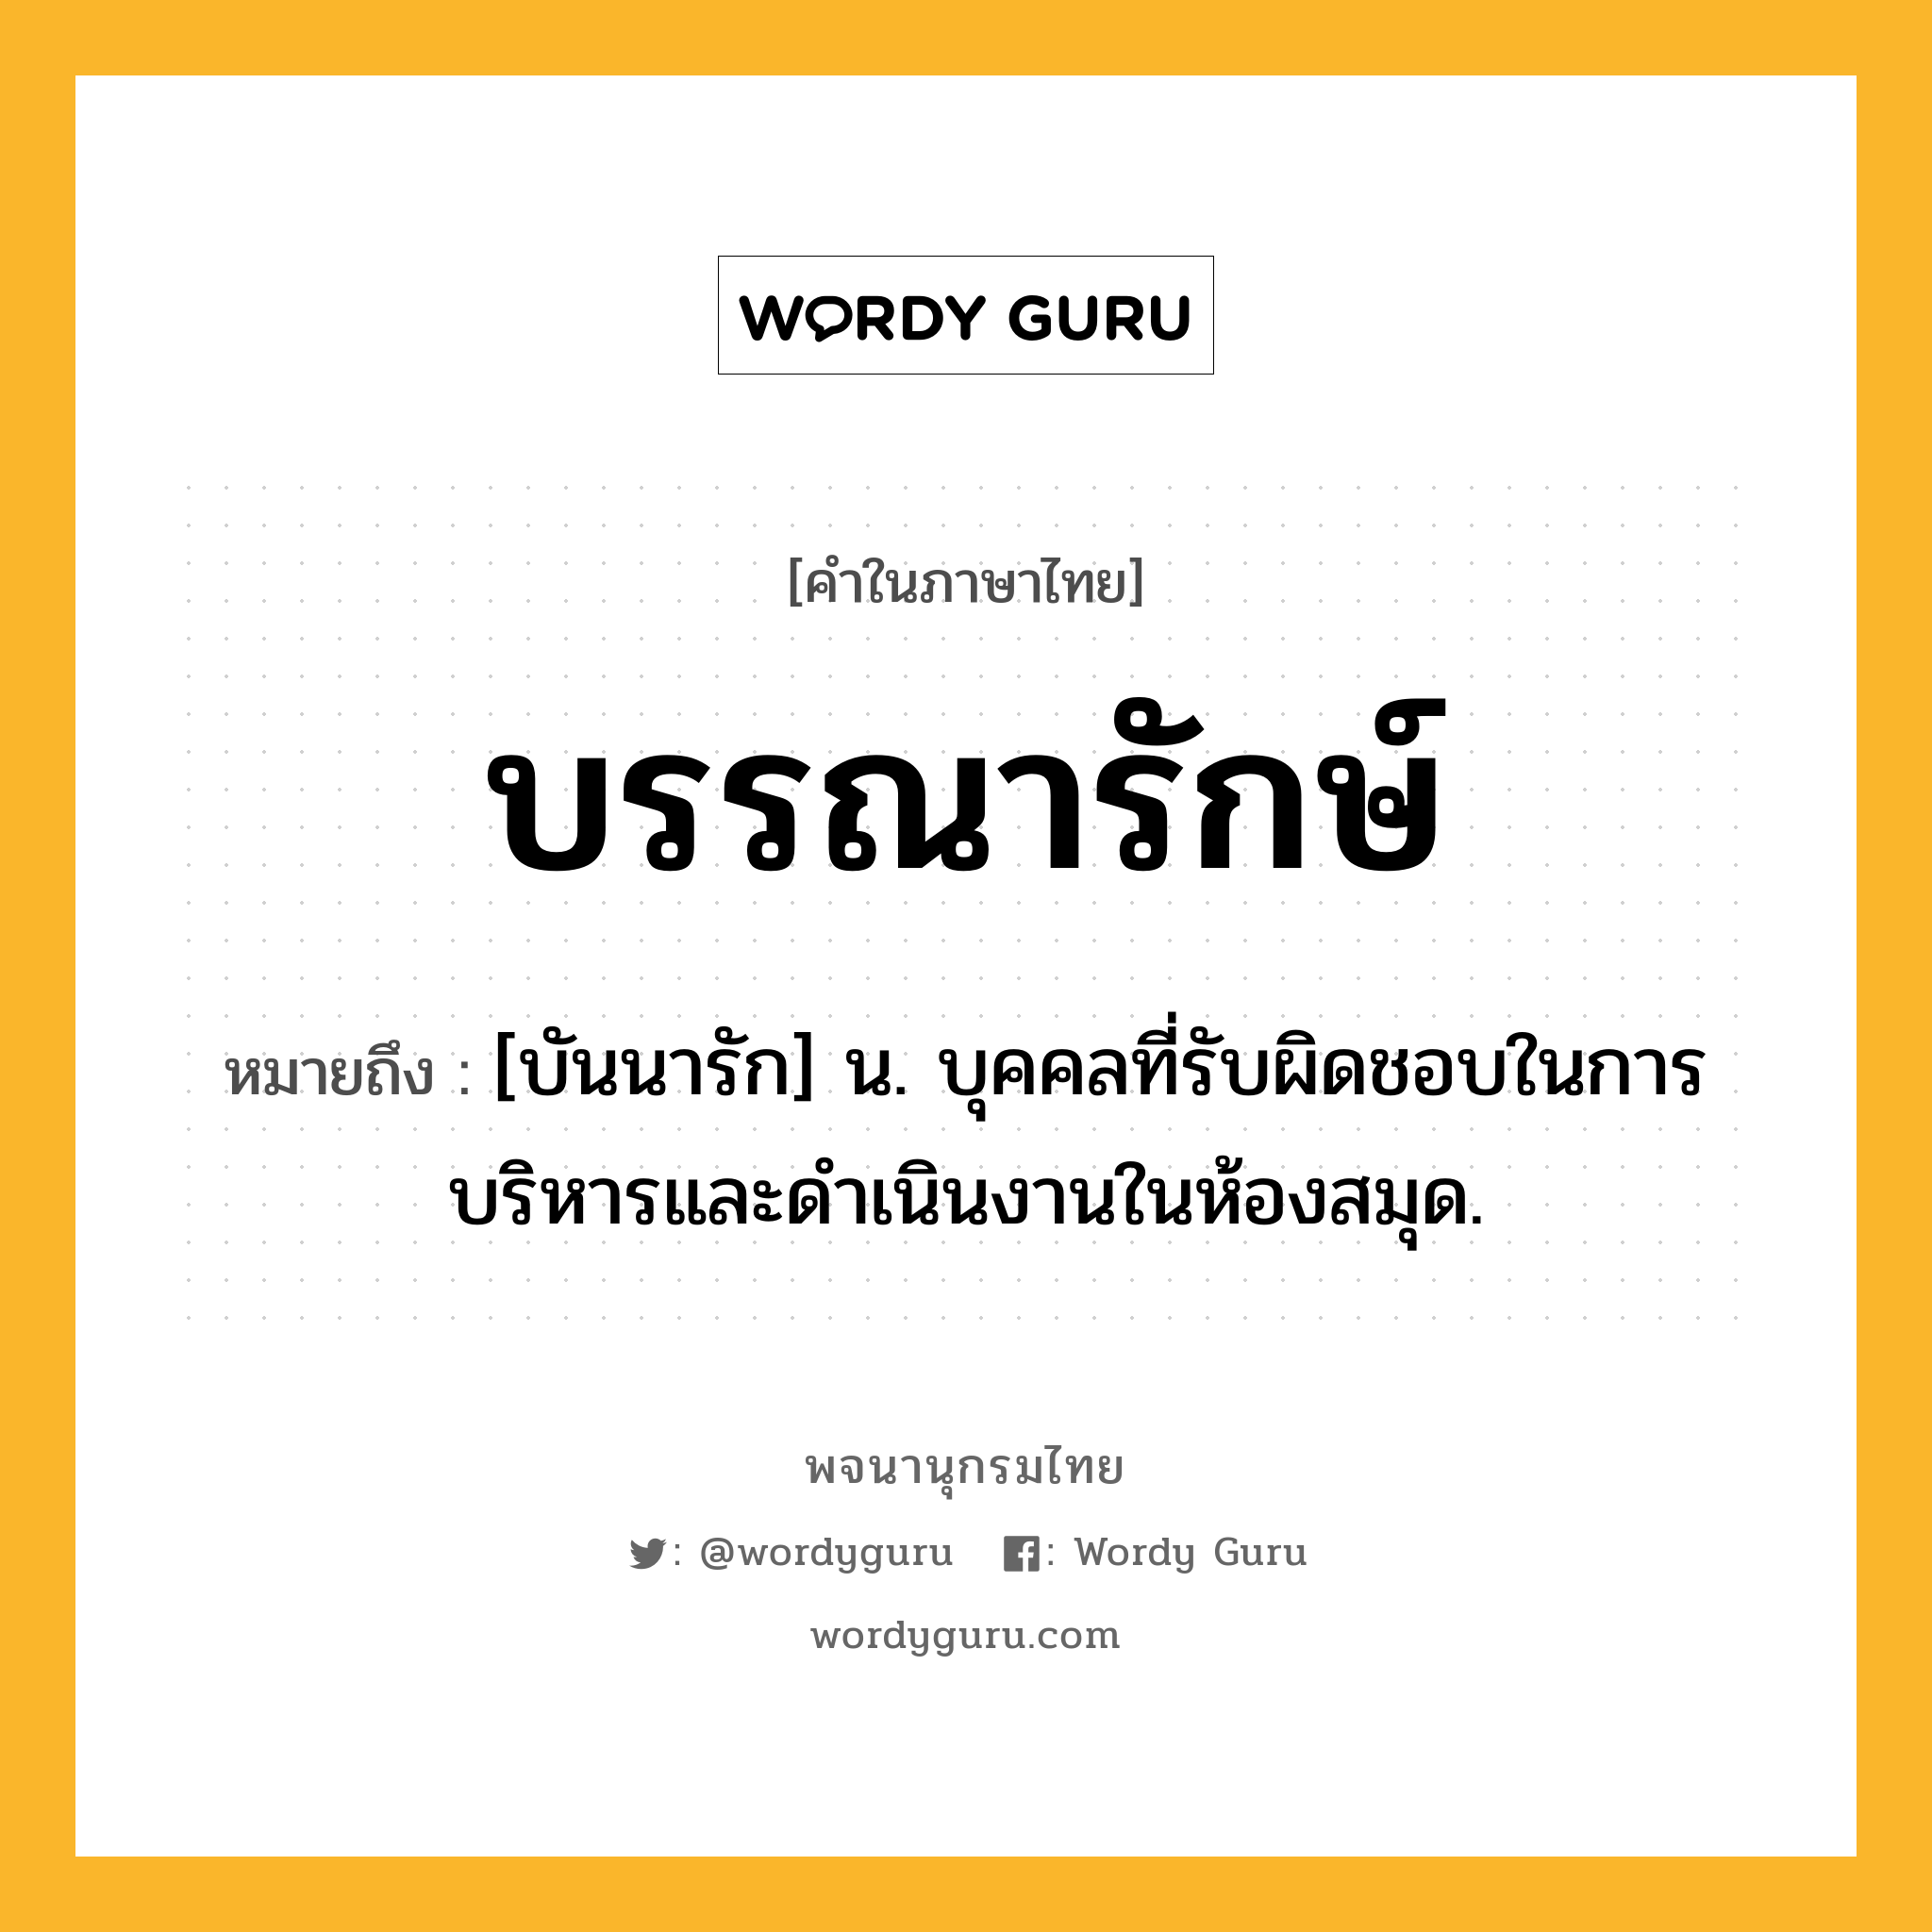 บรรณารักษ์ ความหมาย หมายถึงอะไร?, คำในภาษาไทย บรรณารักษ์ หมายถึง [บันนารัก] น. บุคคลที่รับผิดชอบในการบริหารและดำเนินงานในห้องสมุด.